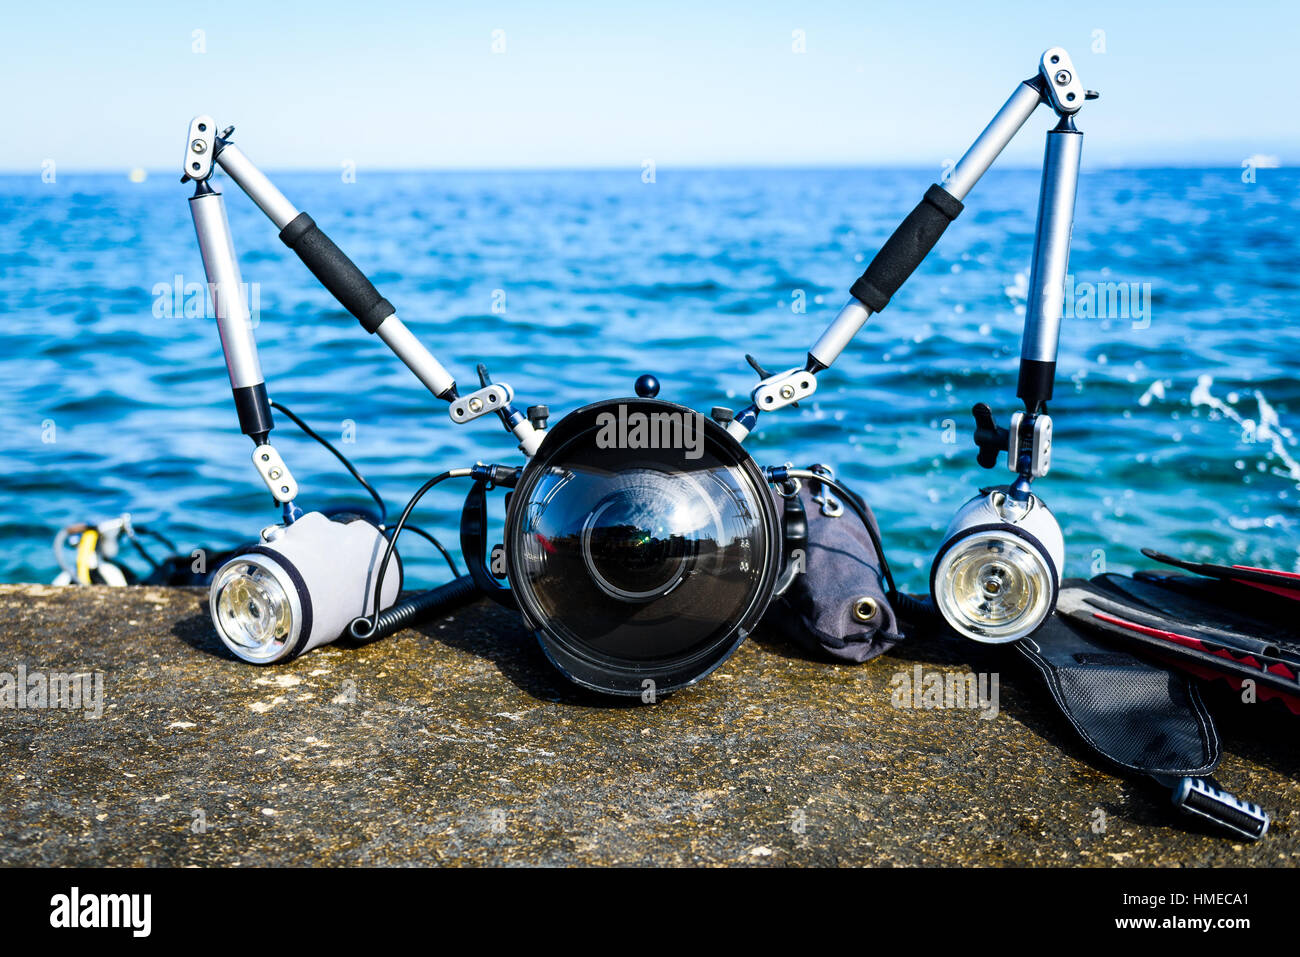 Profesional equipo de fotografía submarina para cámara DSLR con luces estroboscópicas. Domo de ángulo amplio para flashes duales de ojo de pez con armas en carcasa de aluminio Foto de stock